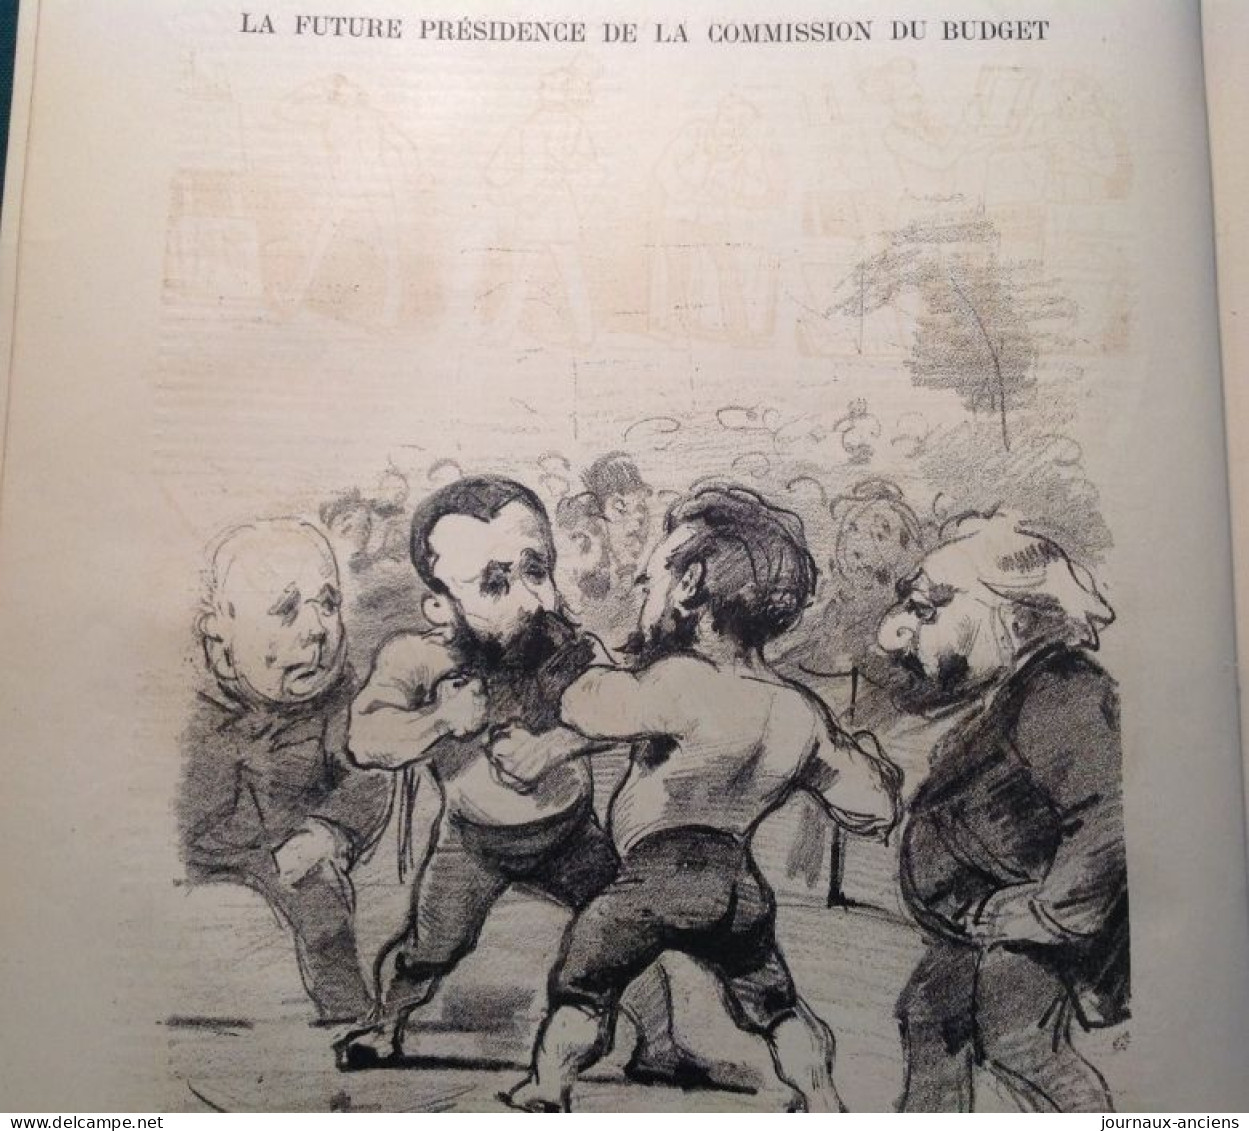 1882 LE MONDE PARISIEN - LES OIES DU CAPITOLE ( JESUITES ) - BOXE ROUVIER = WILSON - INCIDENT DUMAS = JACQUET - Magazines - Before 1900